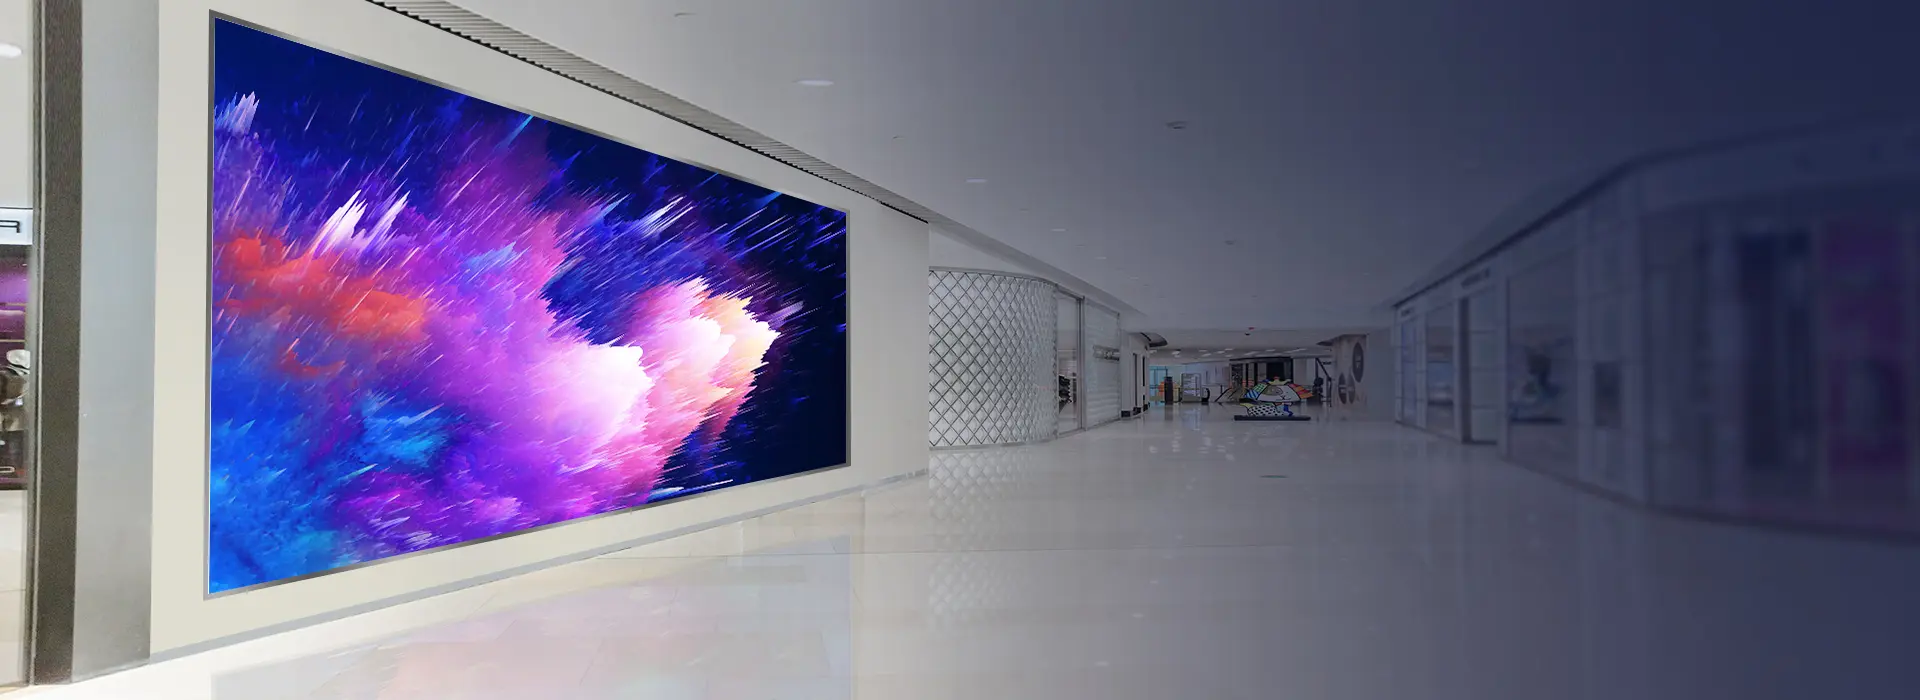 KERCHAN Custom Indoor/Outdoor Giant LED Screen Wall